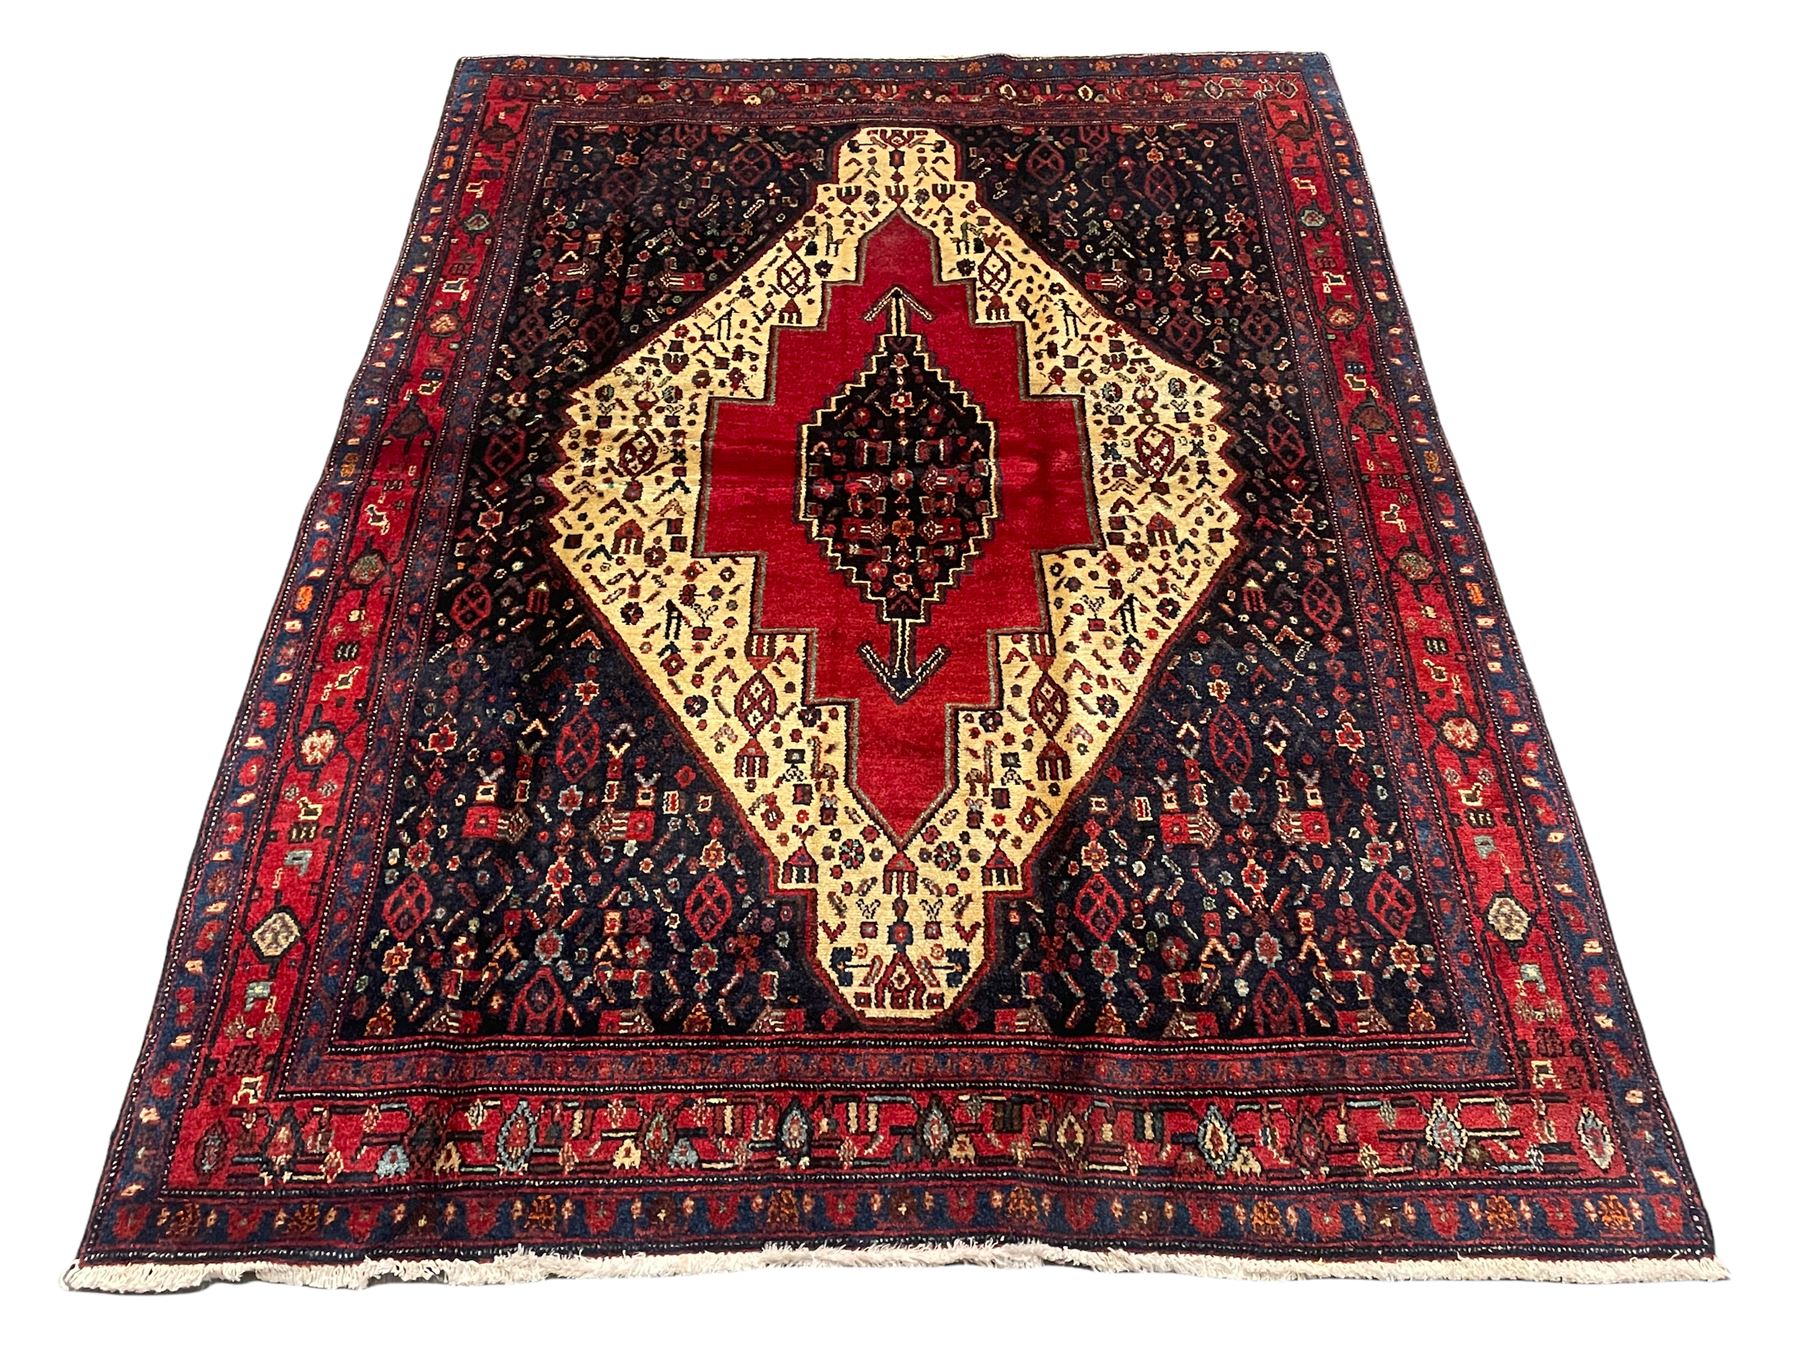 Persian Kurdish rug